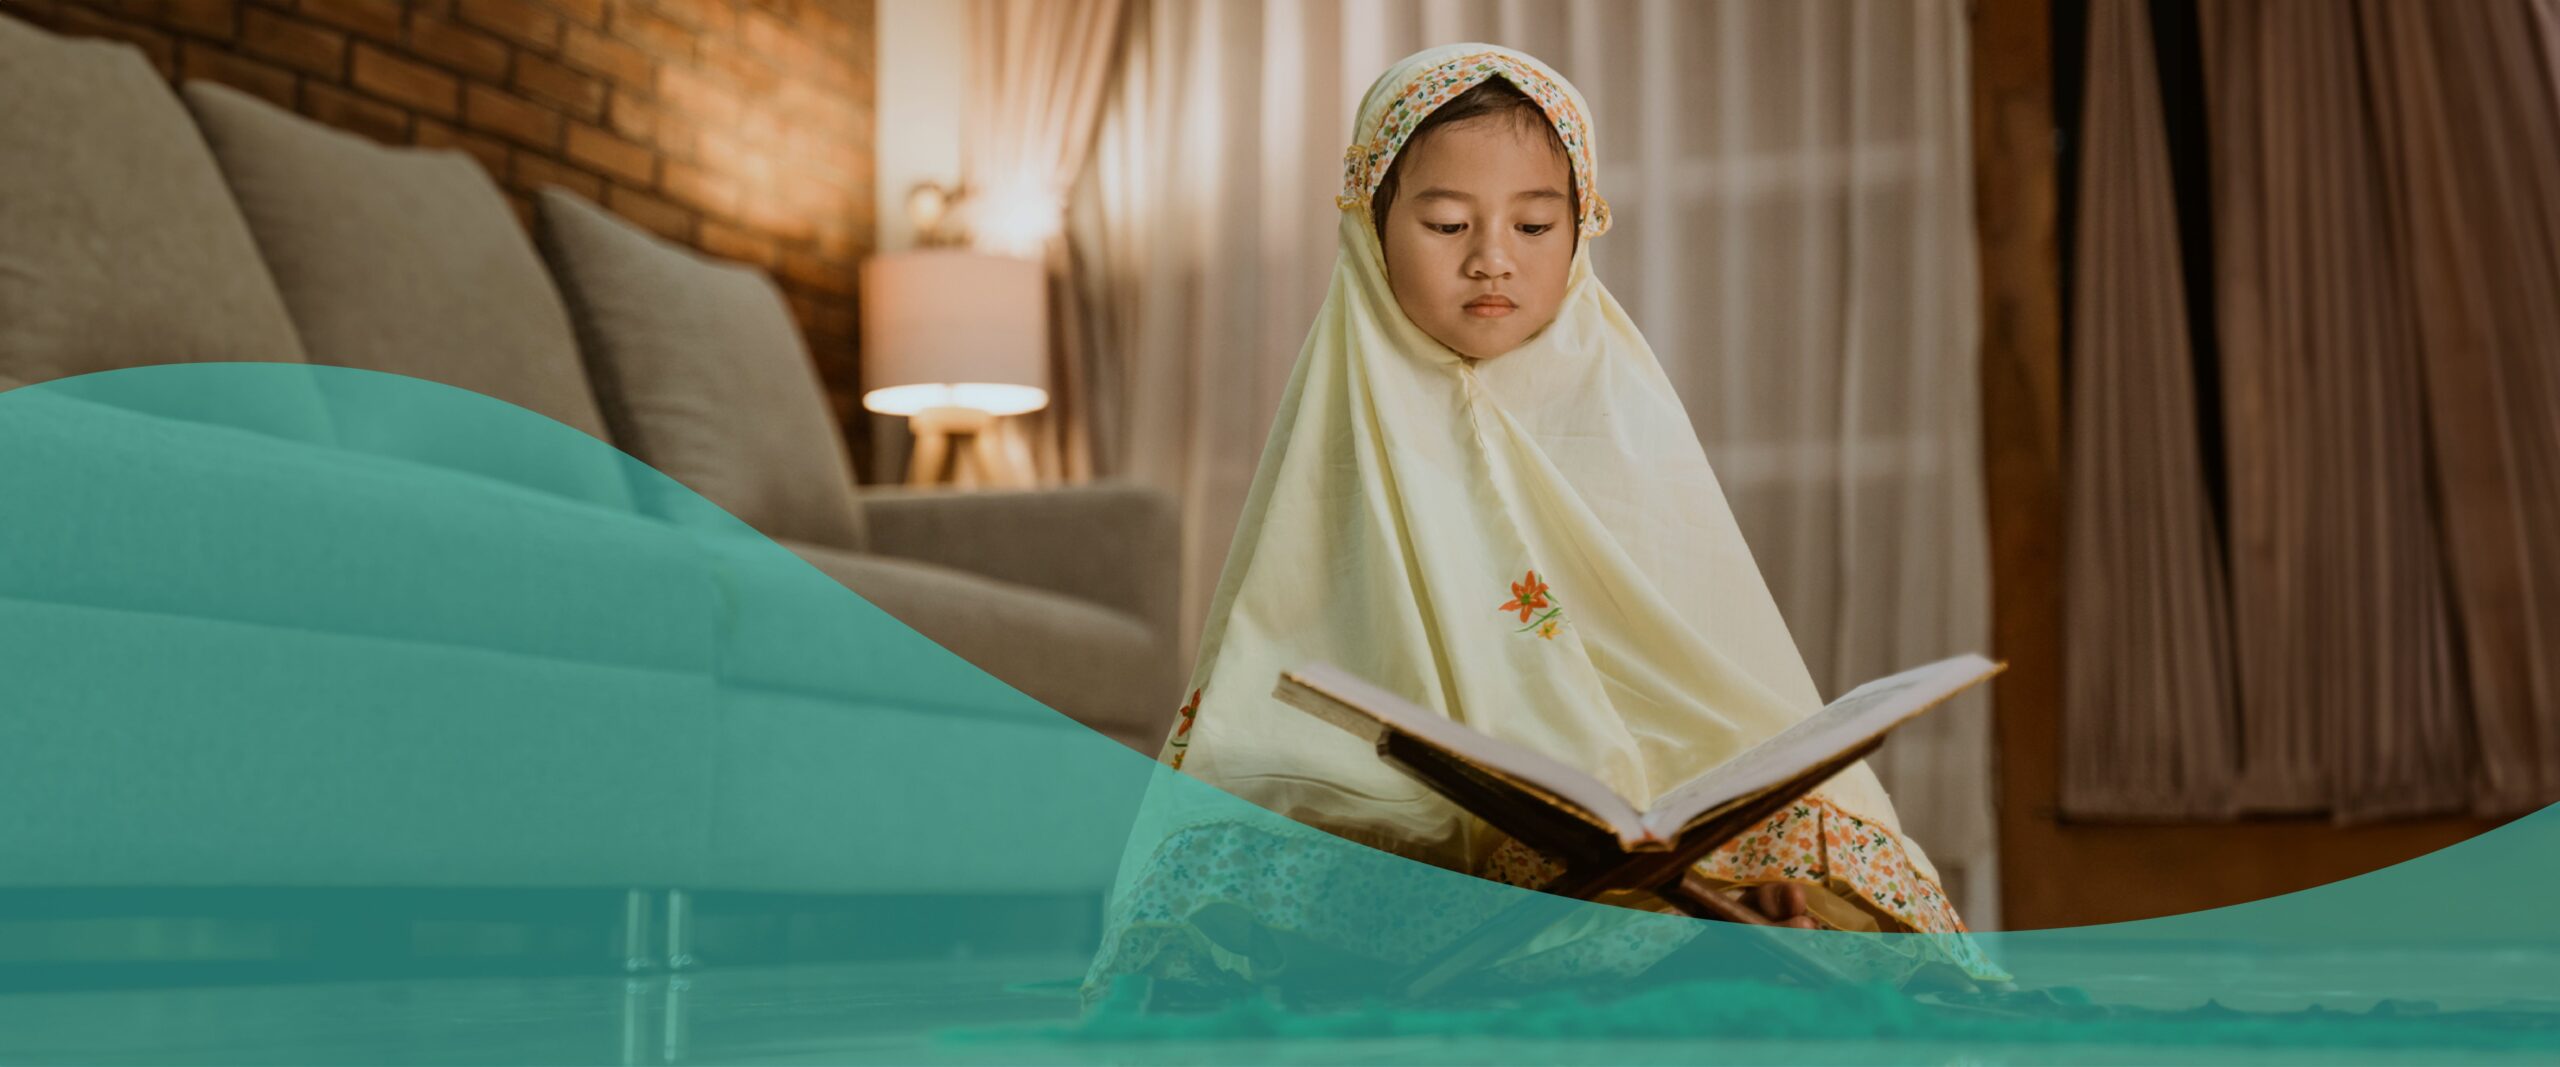 فوائد حفظ القرآن الكريم للأطفال .. الجانب النفسي والاجتماعي